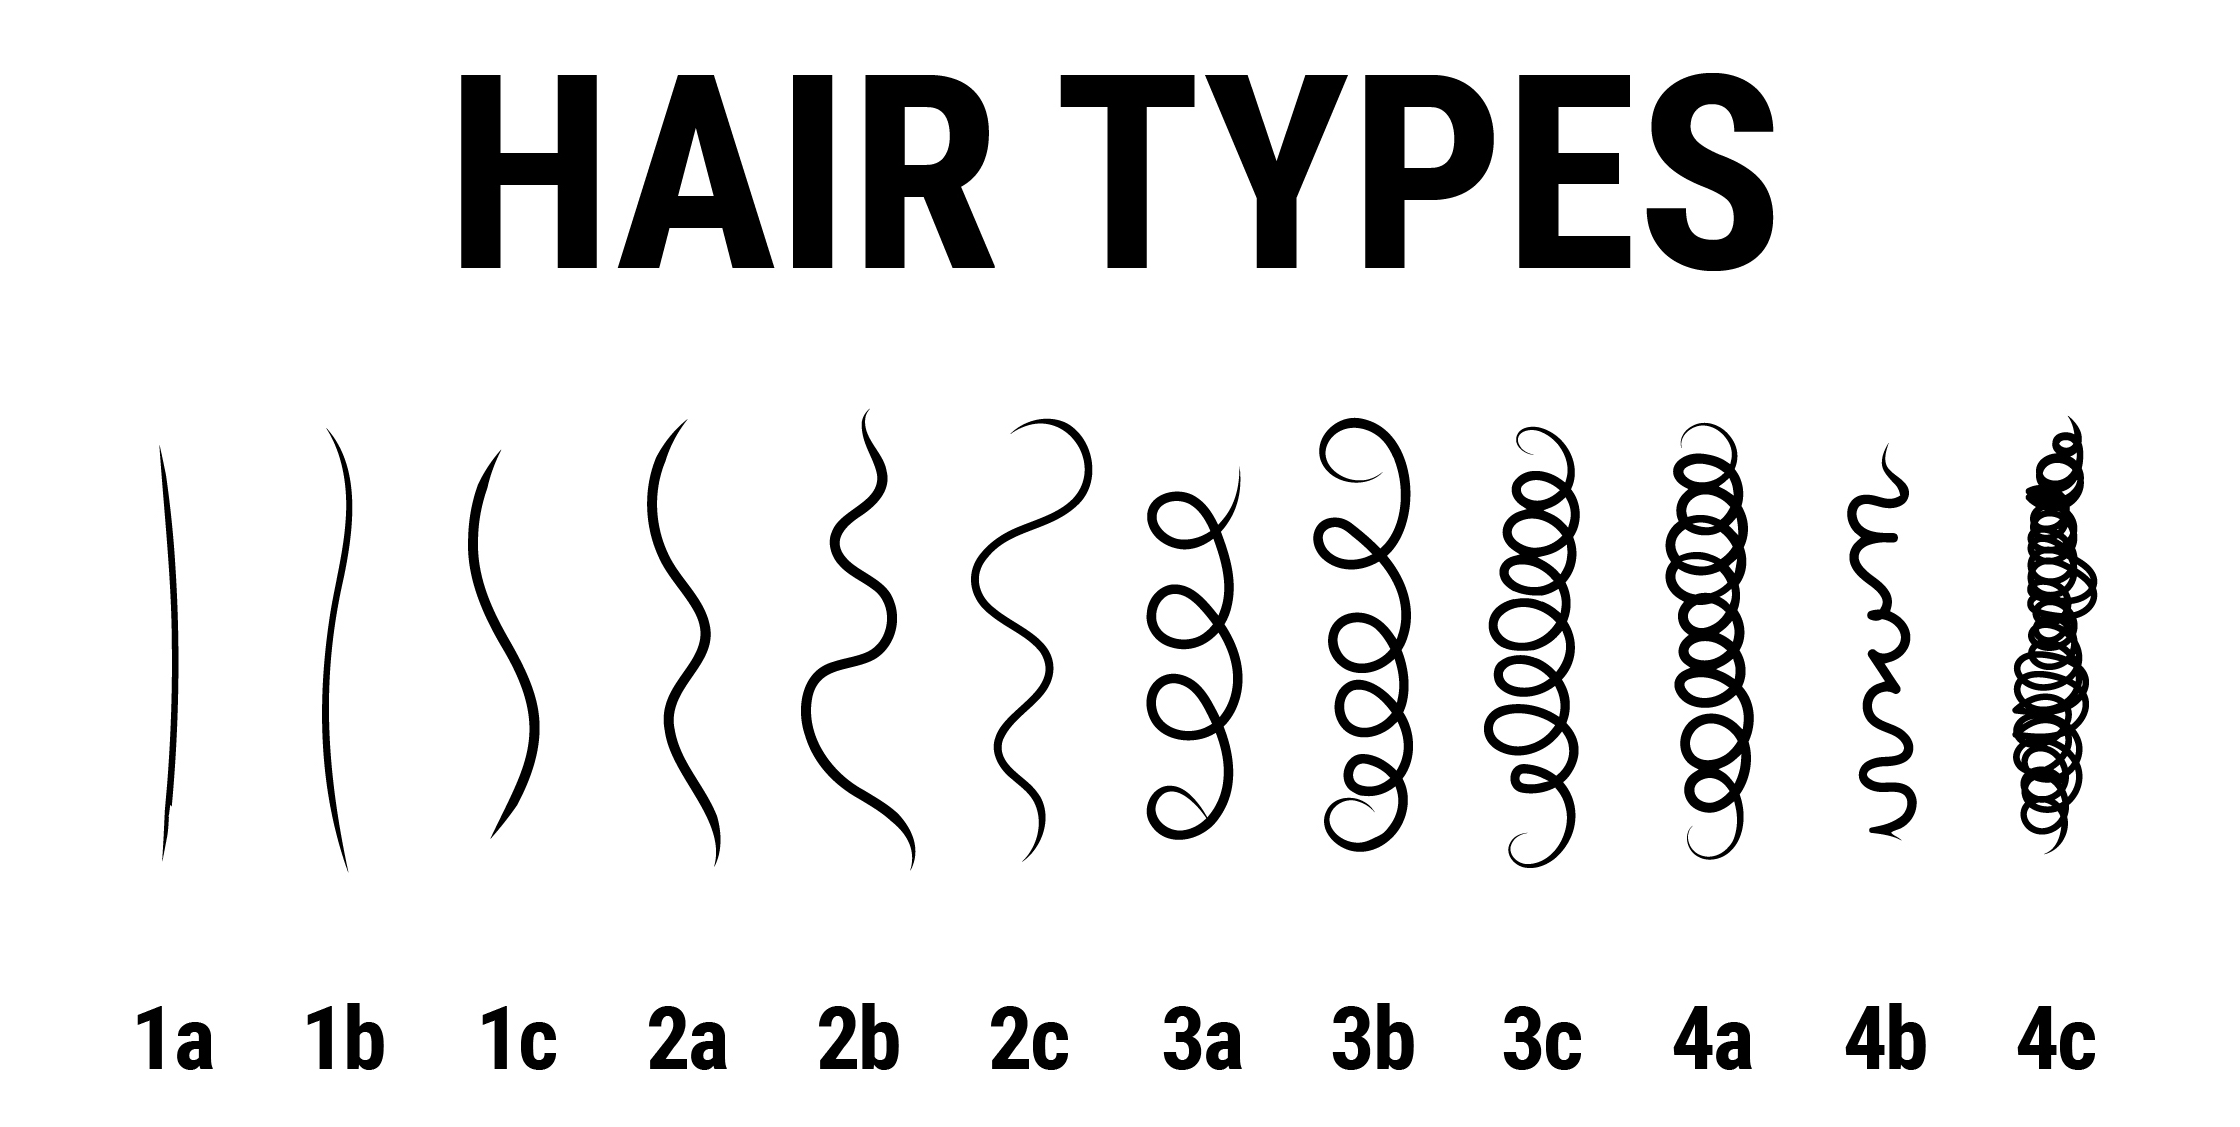 hair texture chart 4c